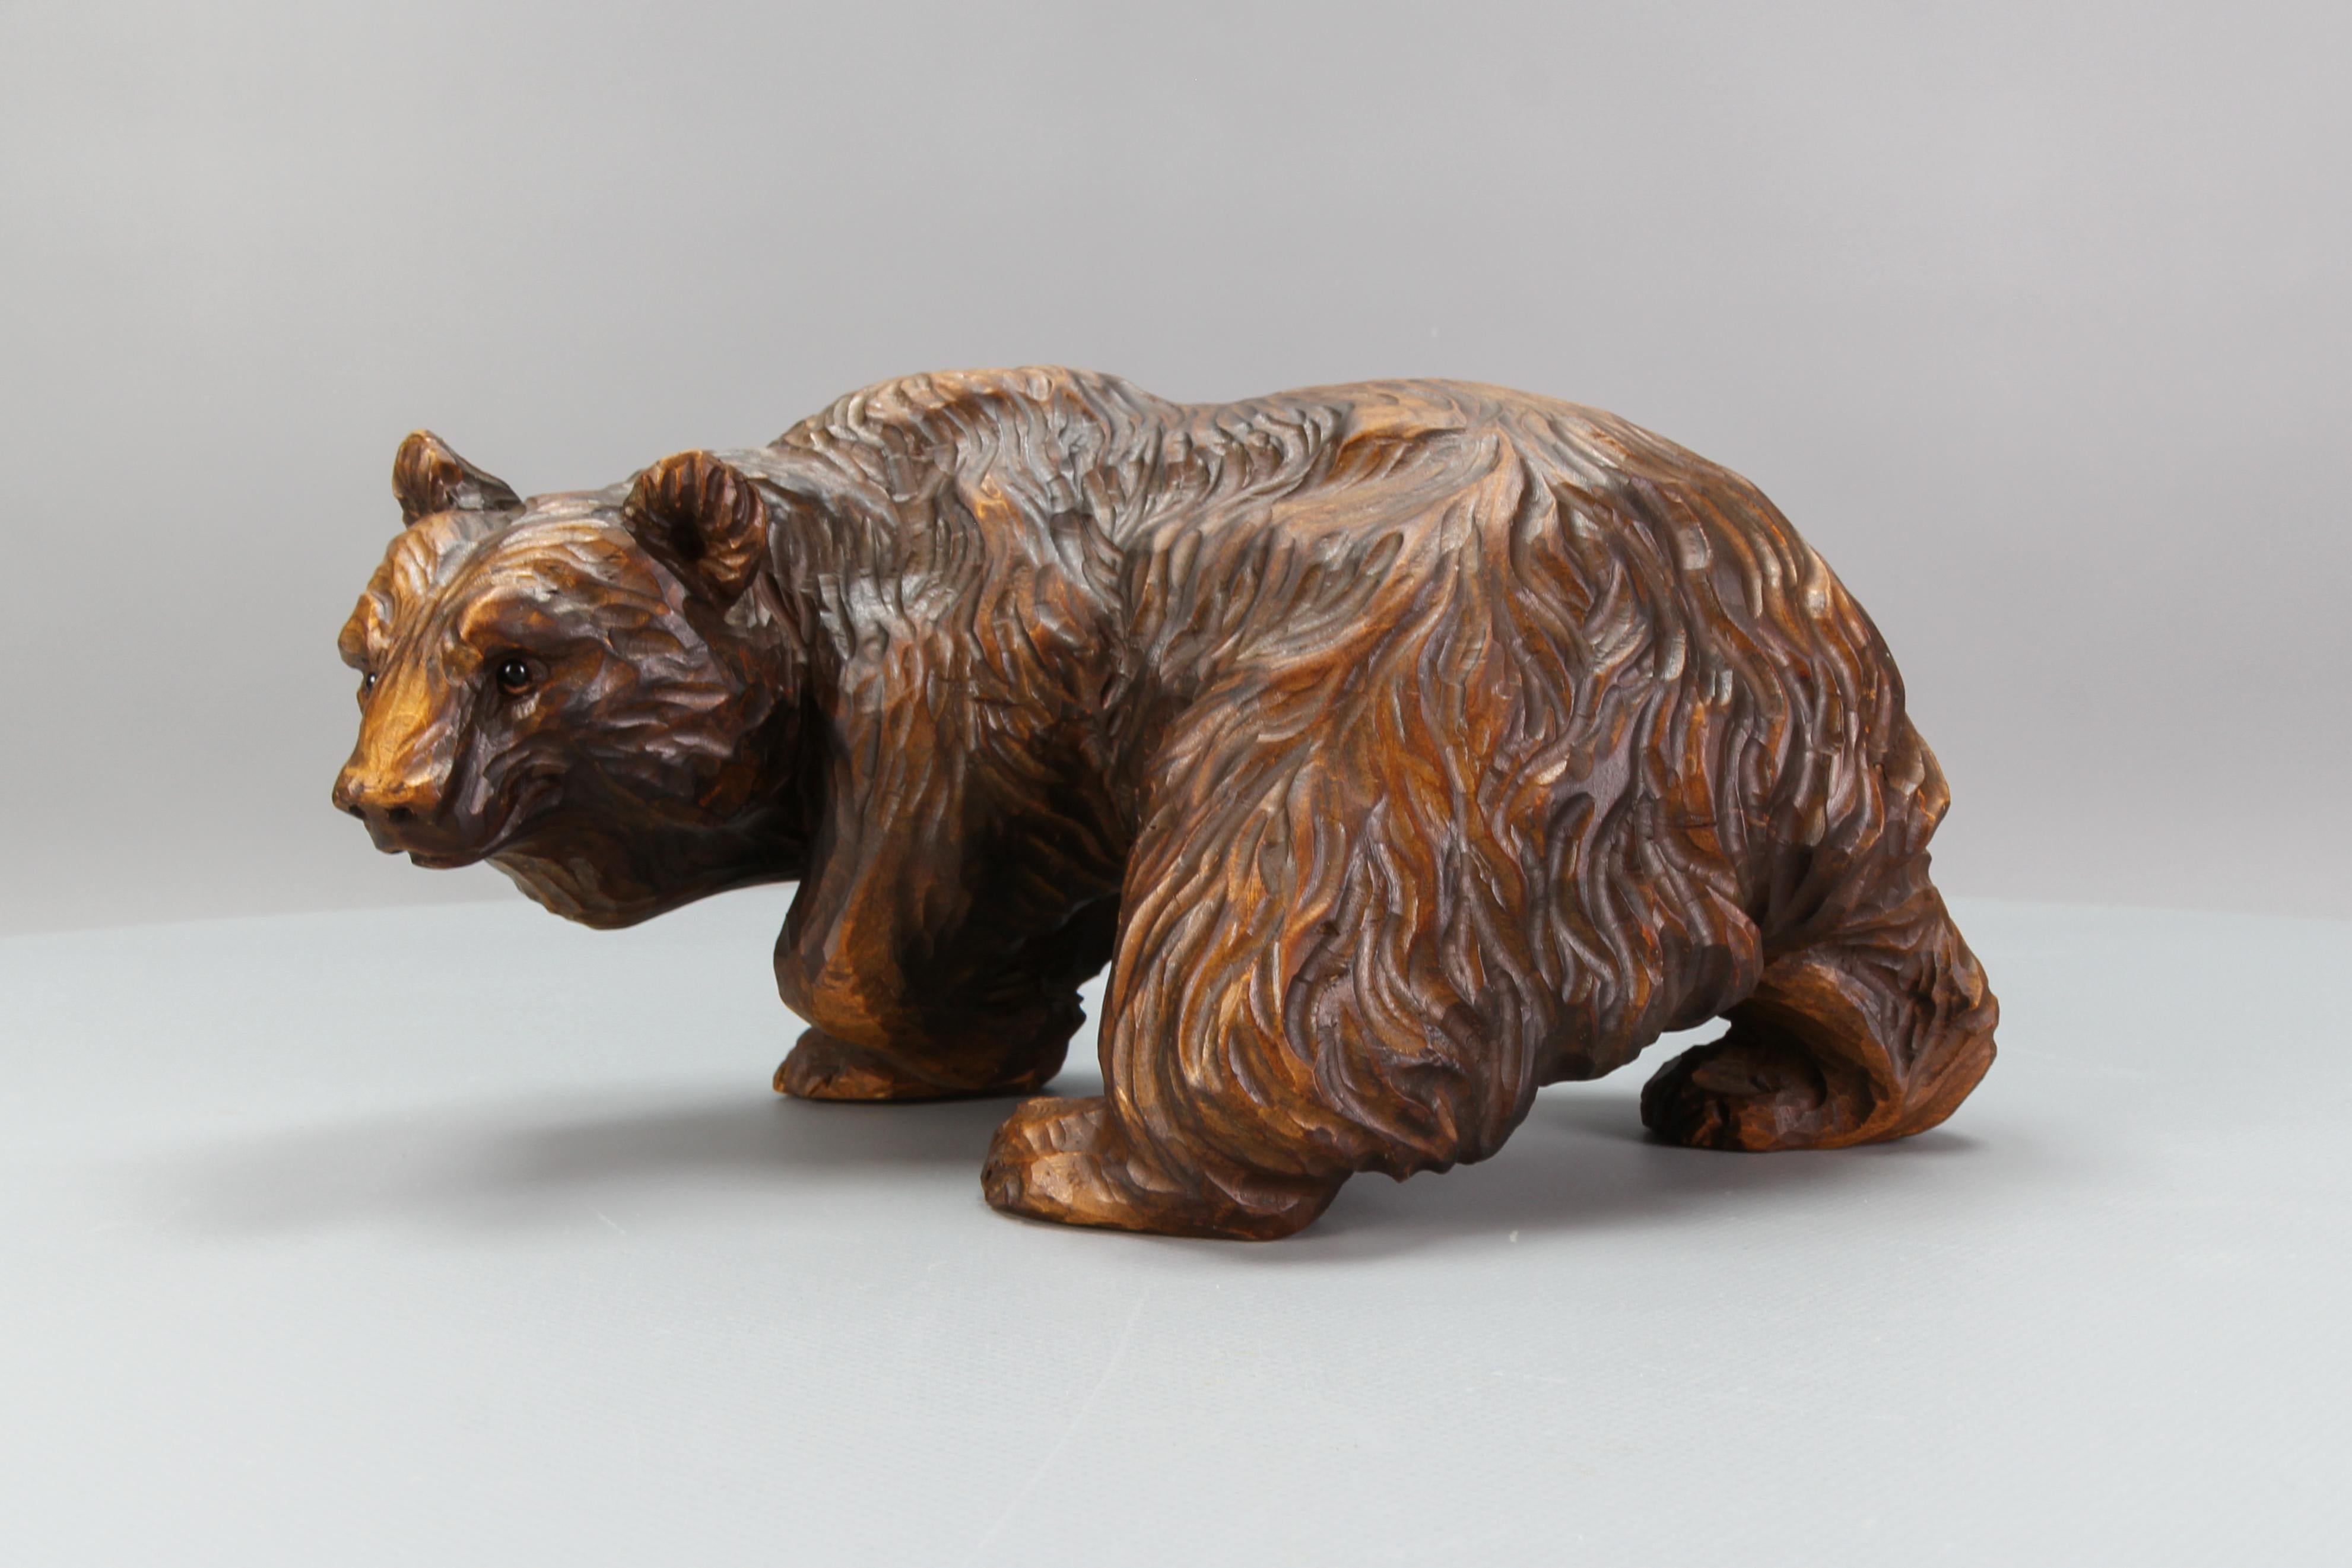 Sculpture d'ours sculptée à la main avec des yeux en verre, Allemagne, vers les années 1930.
Une belle figurine d'ours en bois de tilleul, sculptée à la main de façon magistrale, avec des yeux en verre, des traits très détaillés et une fourrure.